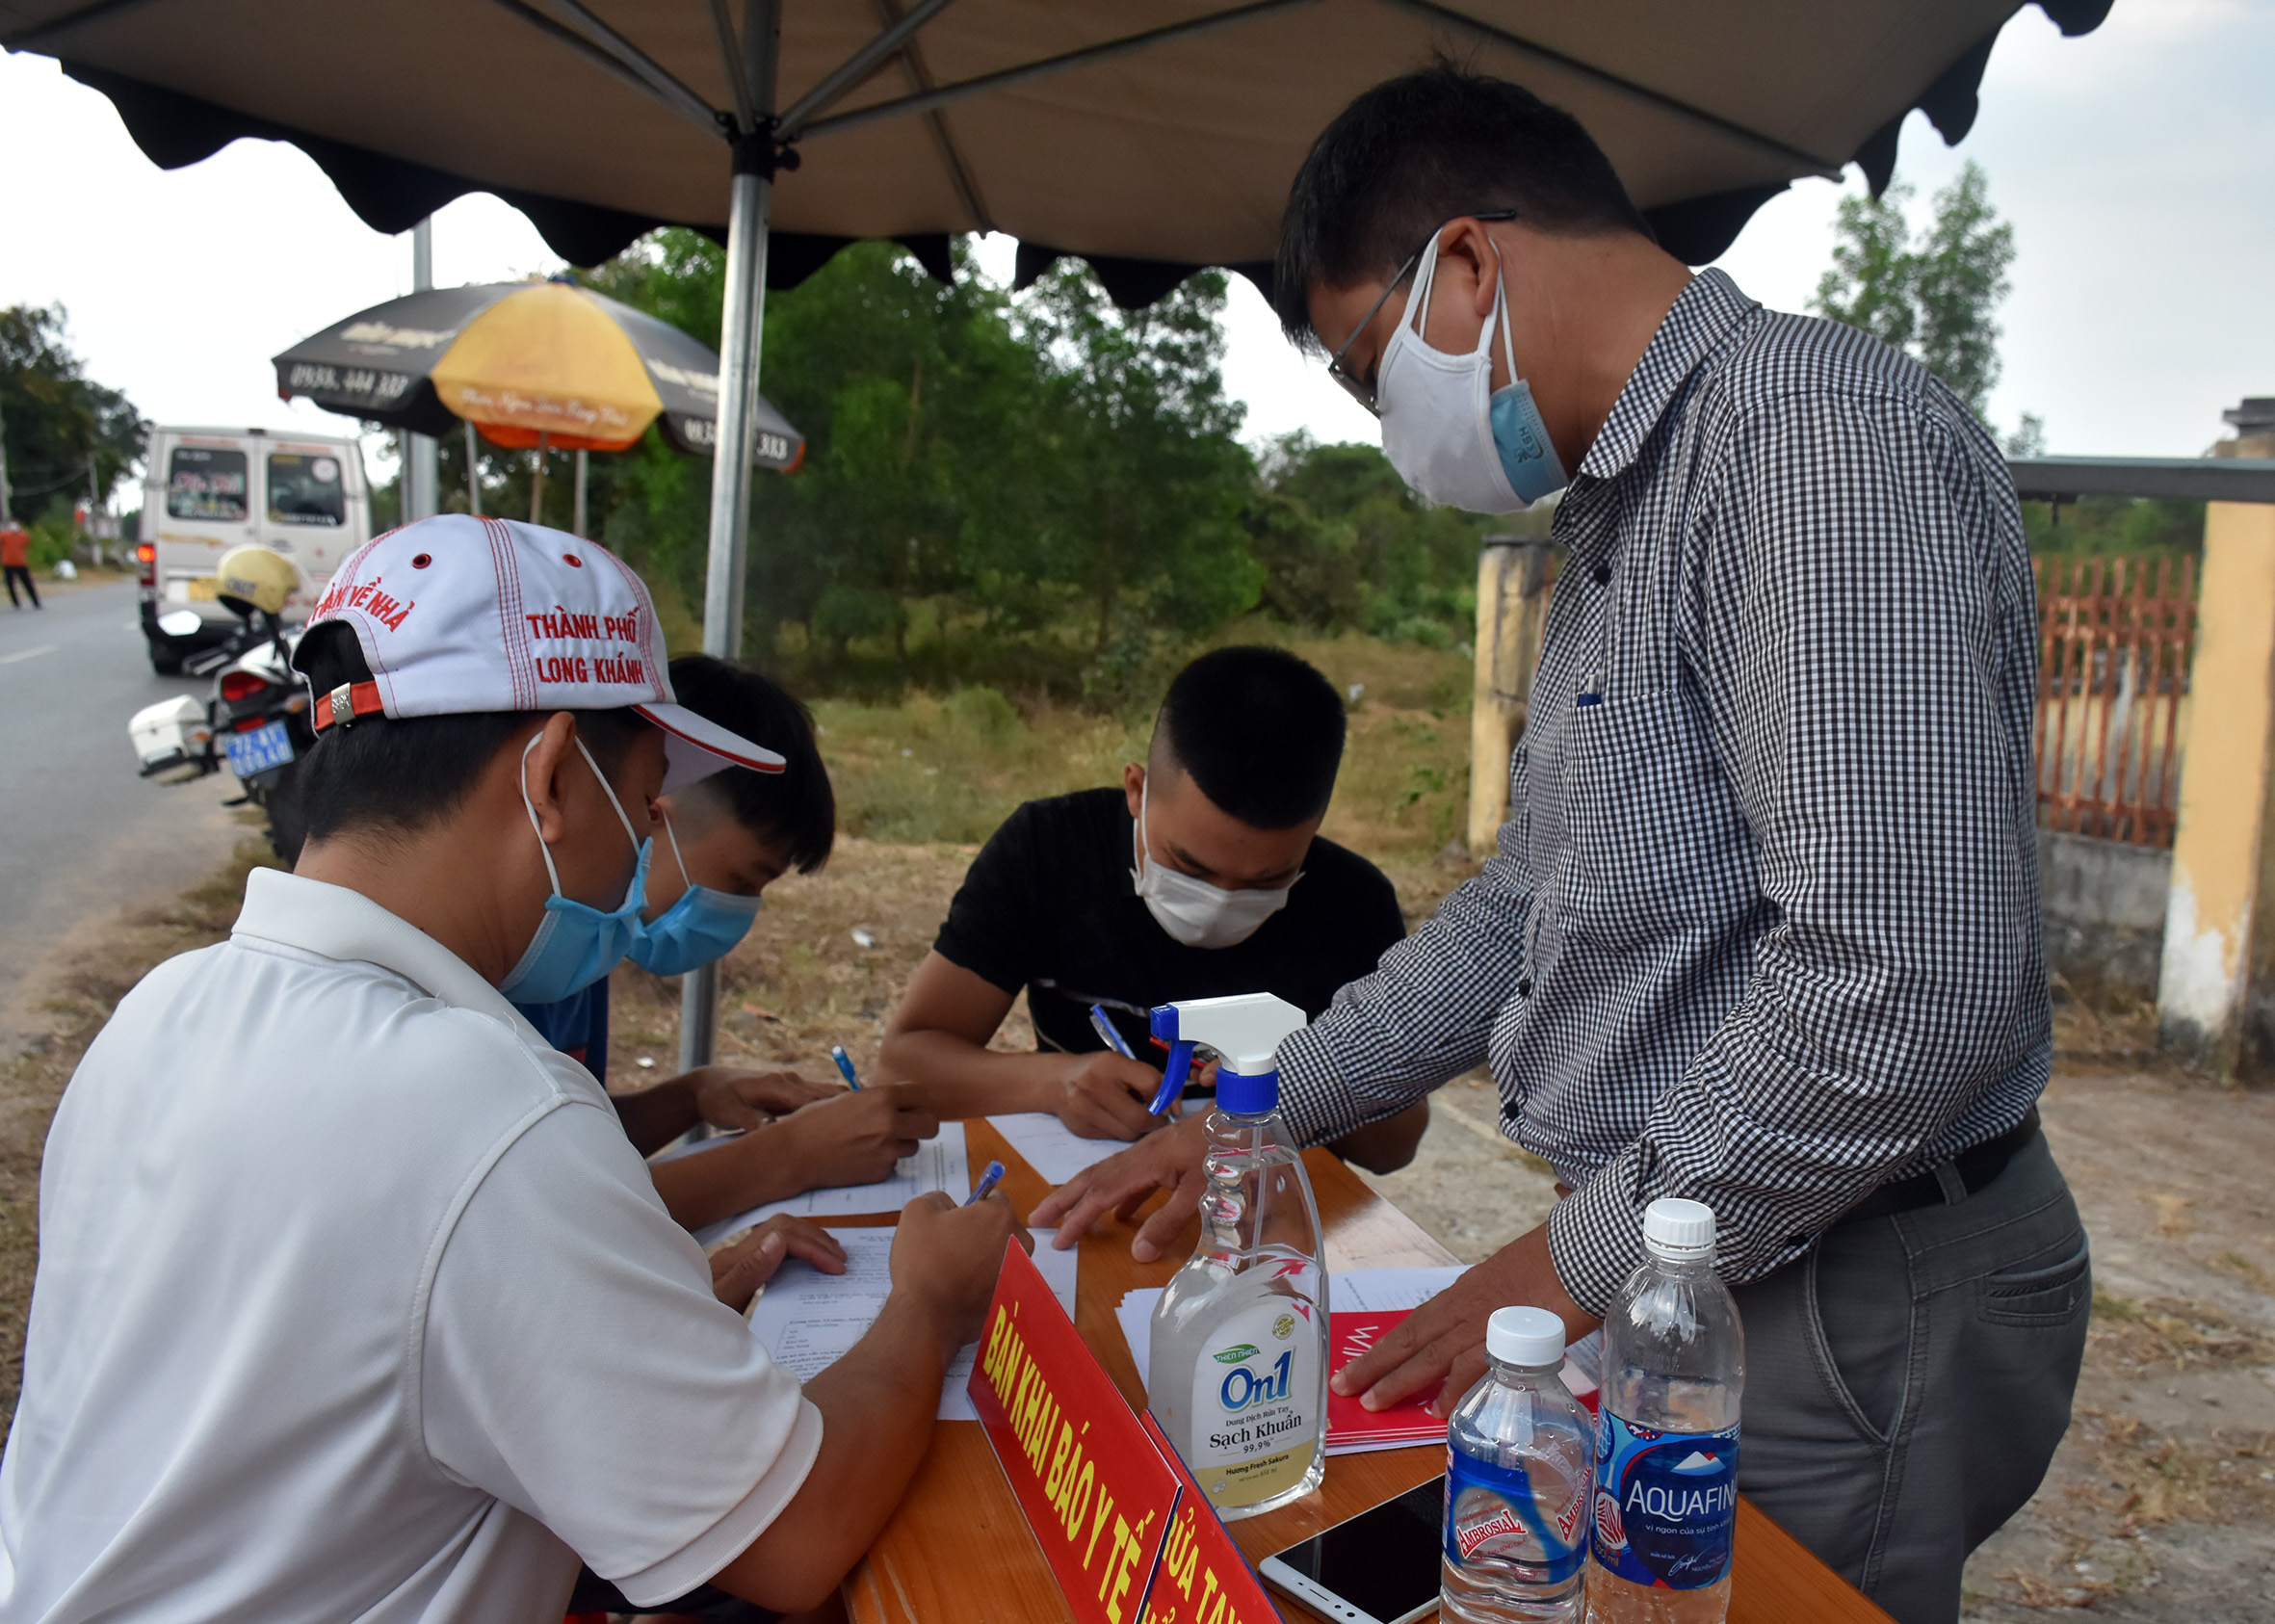 Người dân khai báo y tế tại chốt kiểm tra liên ngành kiểm soát về khai báo y tế và giao thông vận tải tại QL55 (giáp ranh huyện Xuyên Mộc và huyện Hàm Tân, tỉnh Bình Thuận).